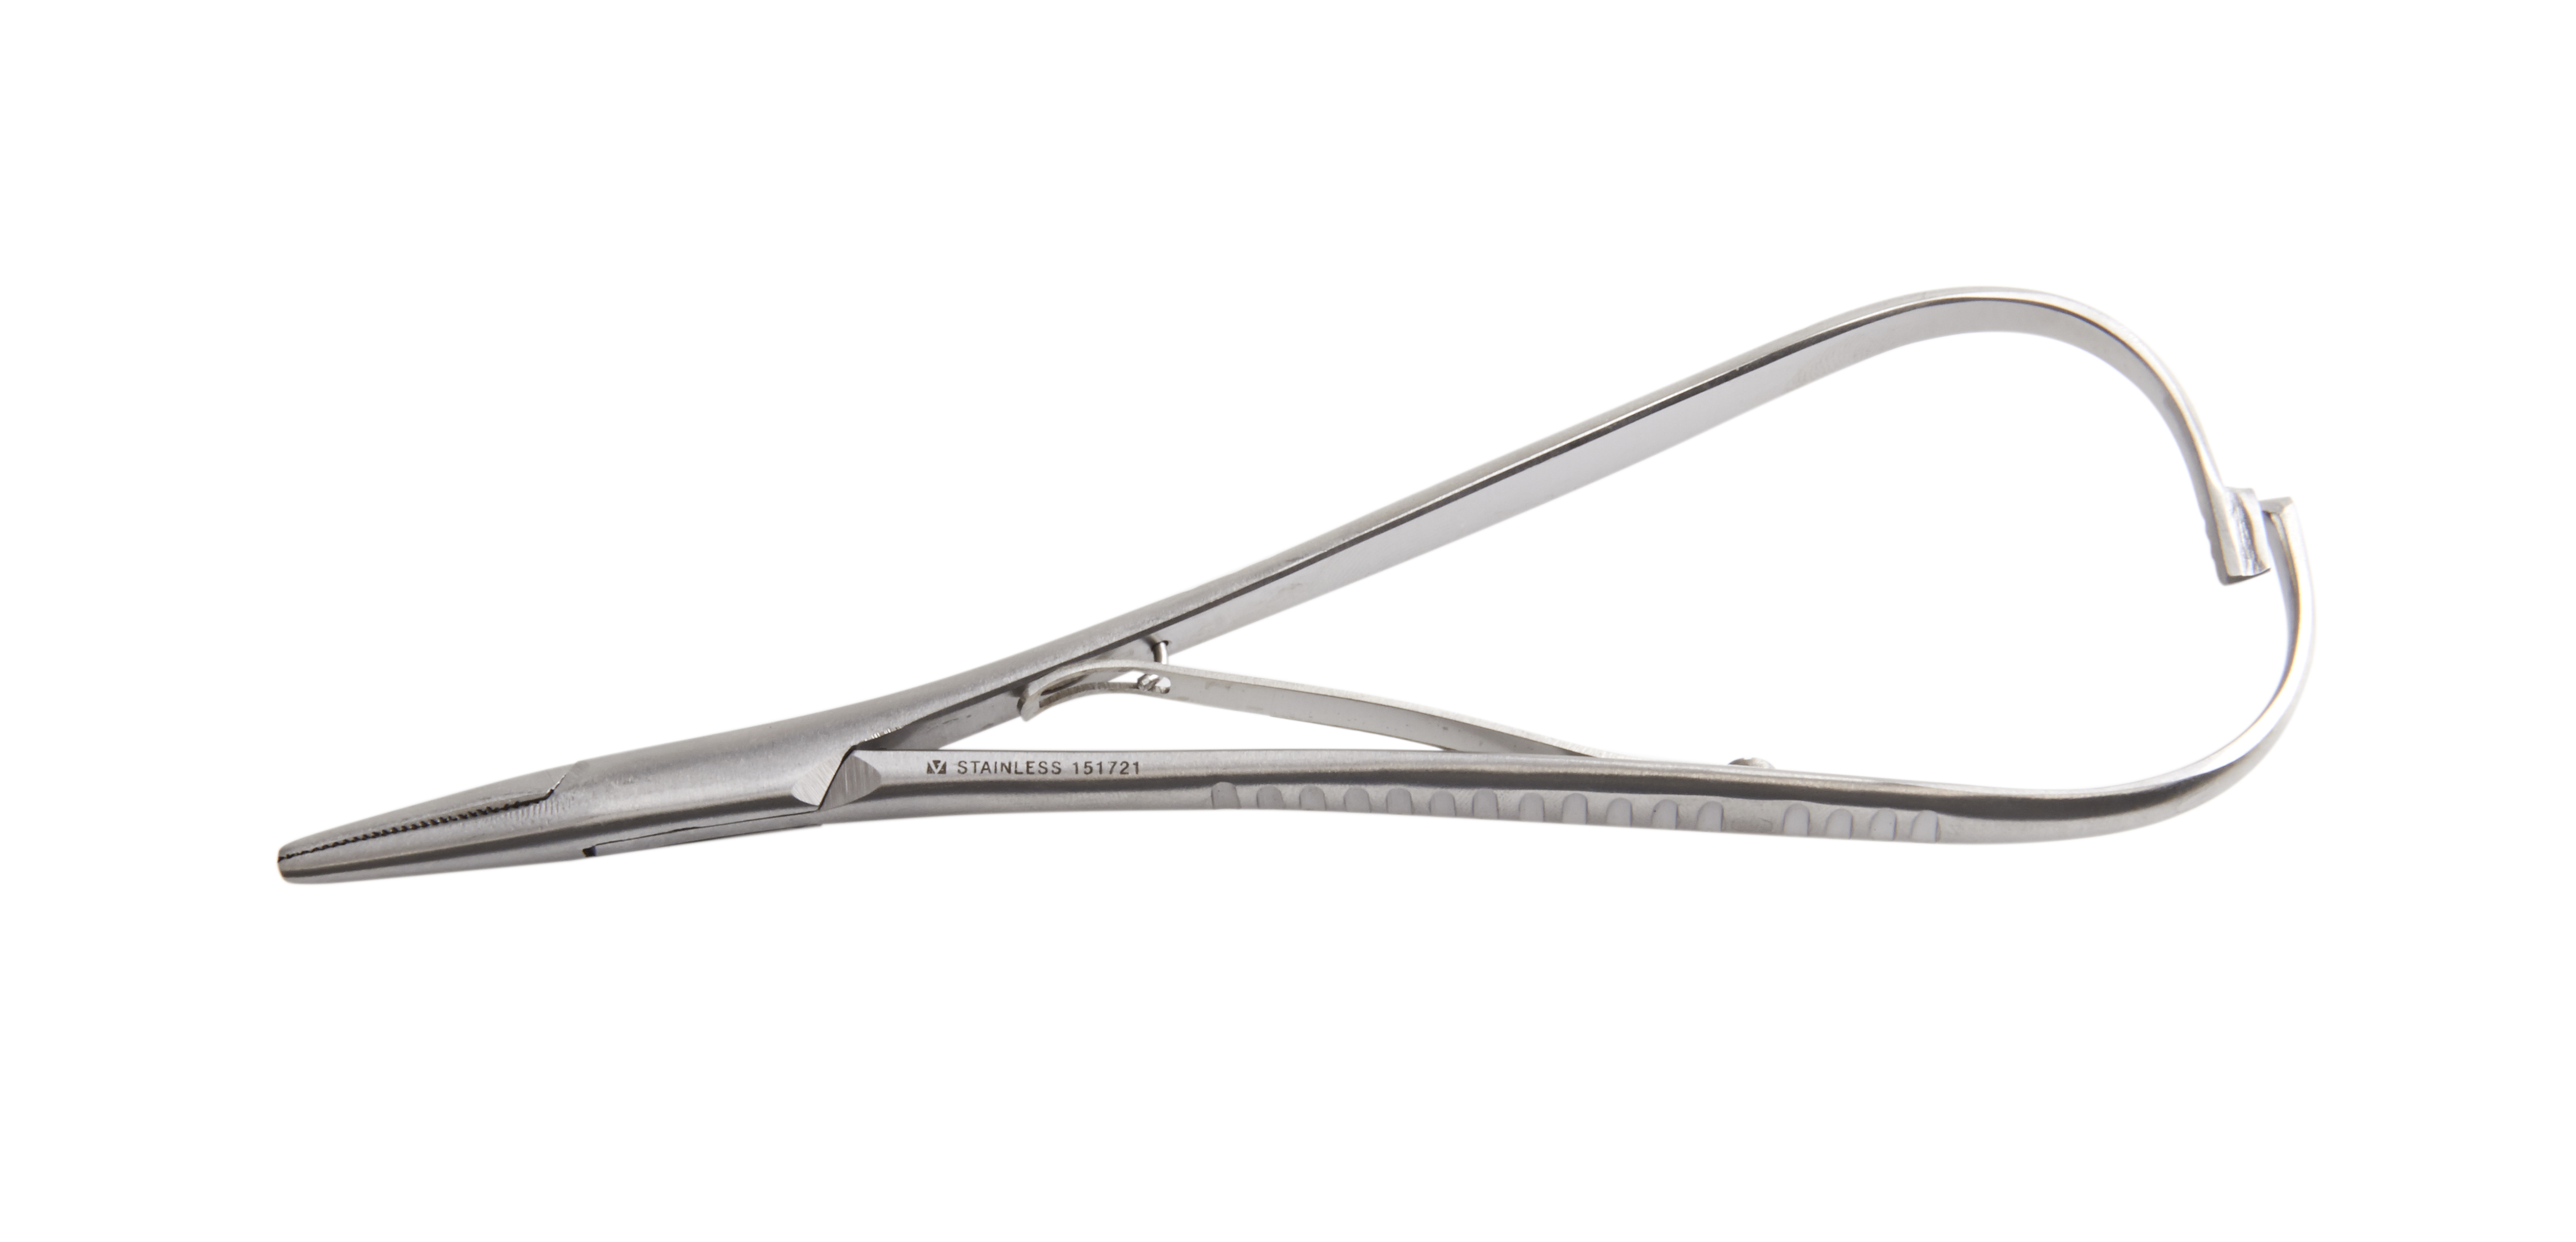 KRUUSE Needle holder Mathieu, 17 cm, standard quality